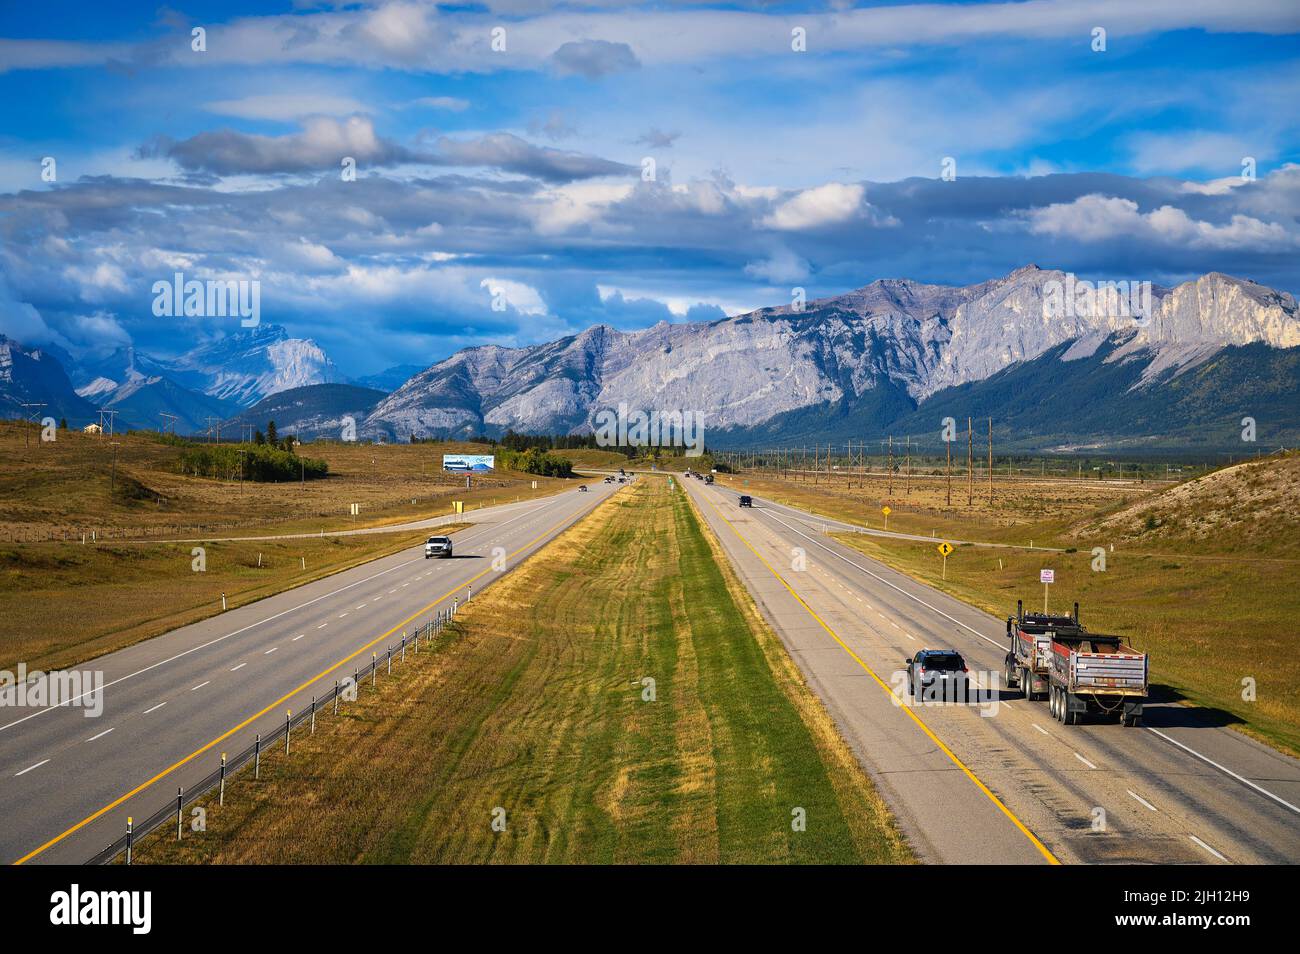 Les voitures se déplacent sur l'autoroute transcanadienne avec les montagnes Rocheuses canadiennes en arrière-plan Banque D'Images